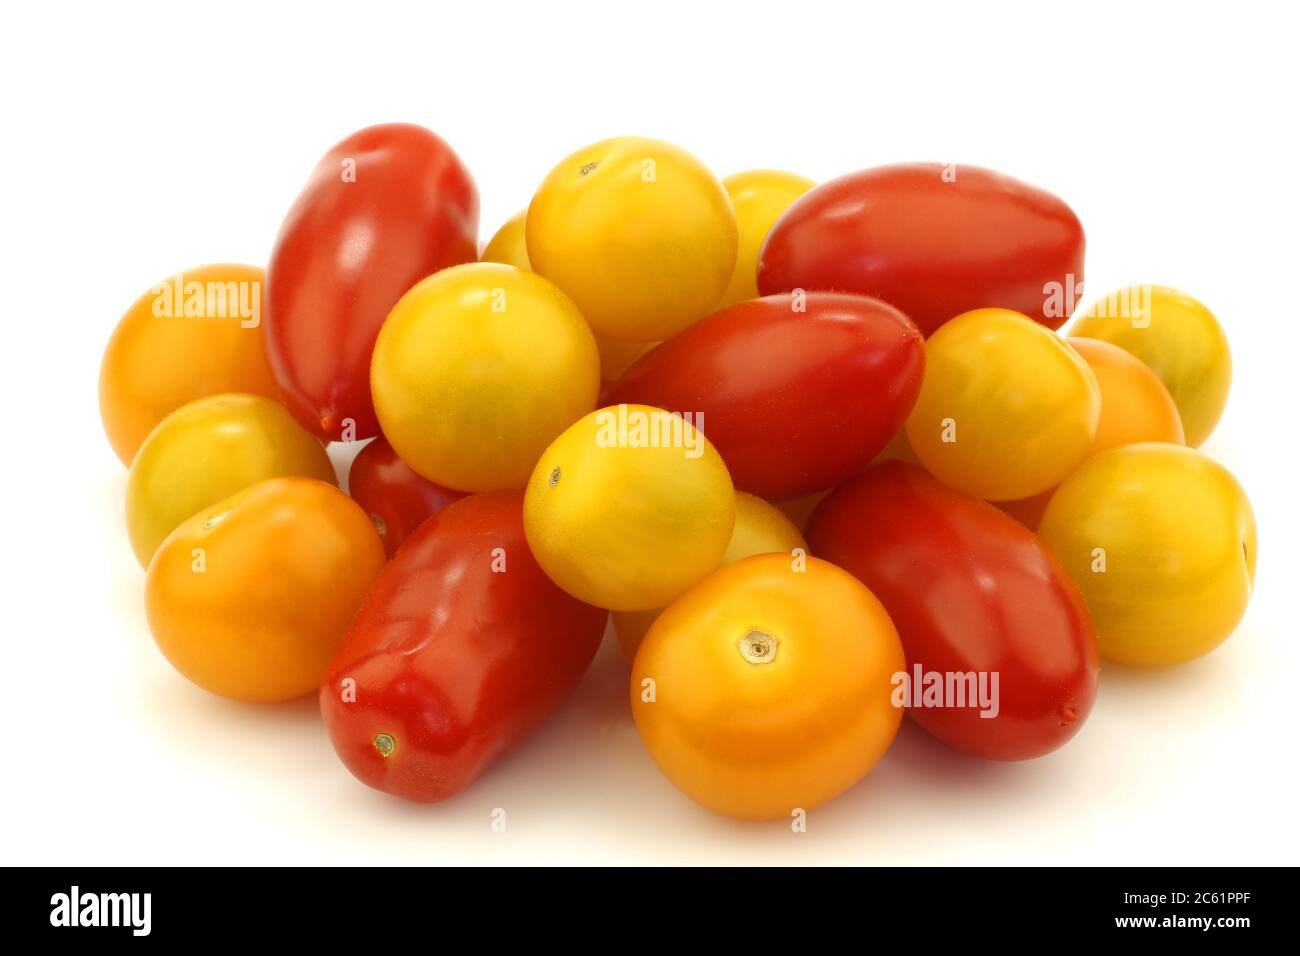 bouquet de cerises rouges et jaunes et tomates italiennes mélangées sur fond blanc Banque D'Images